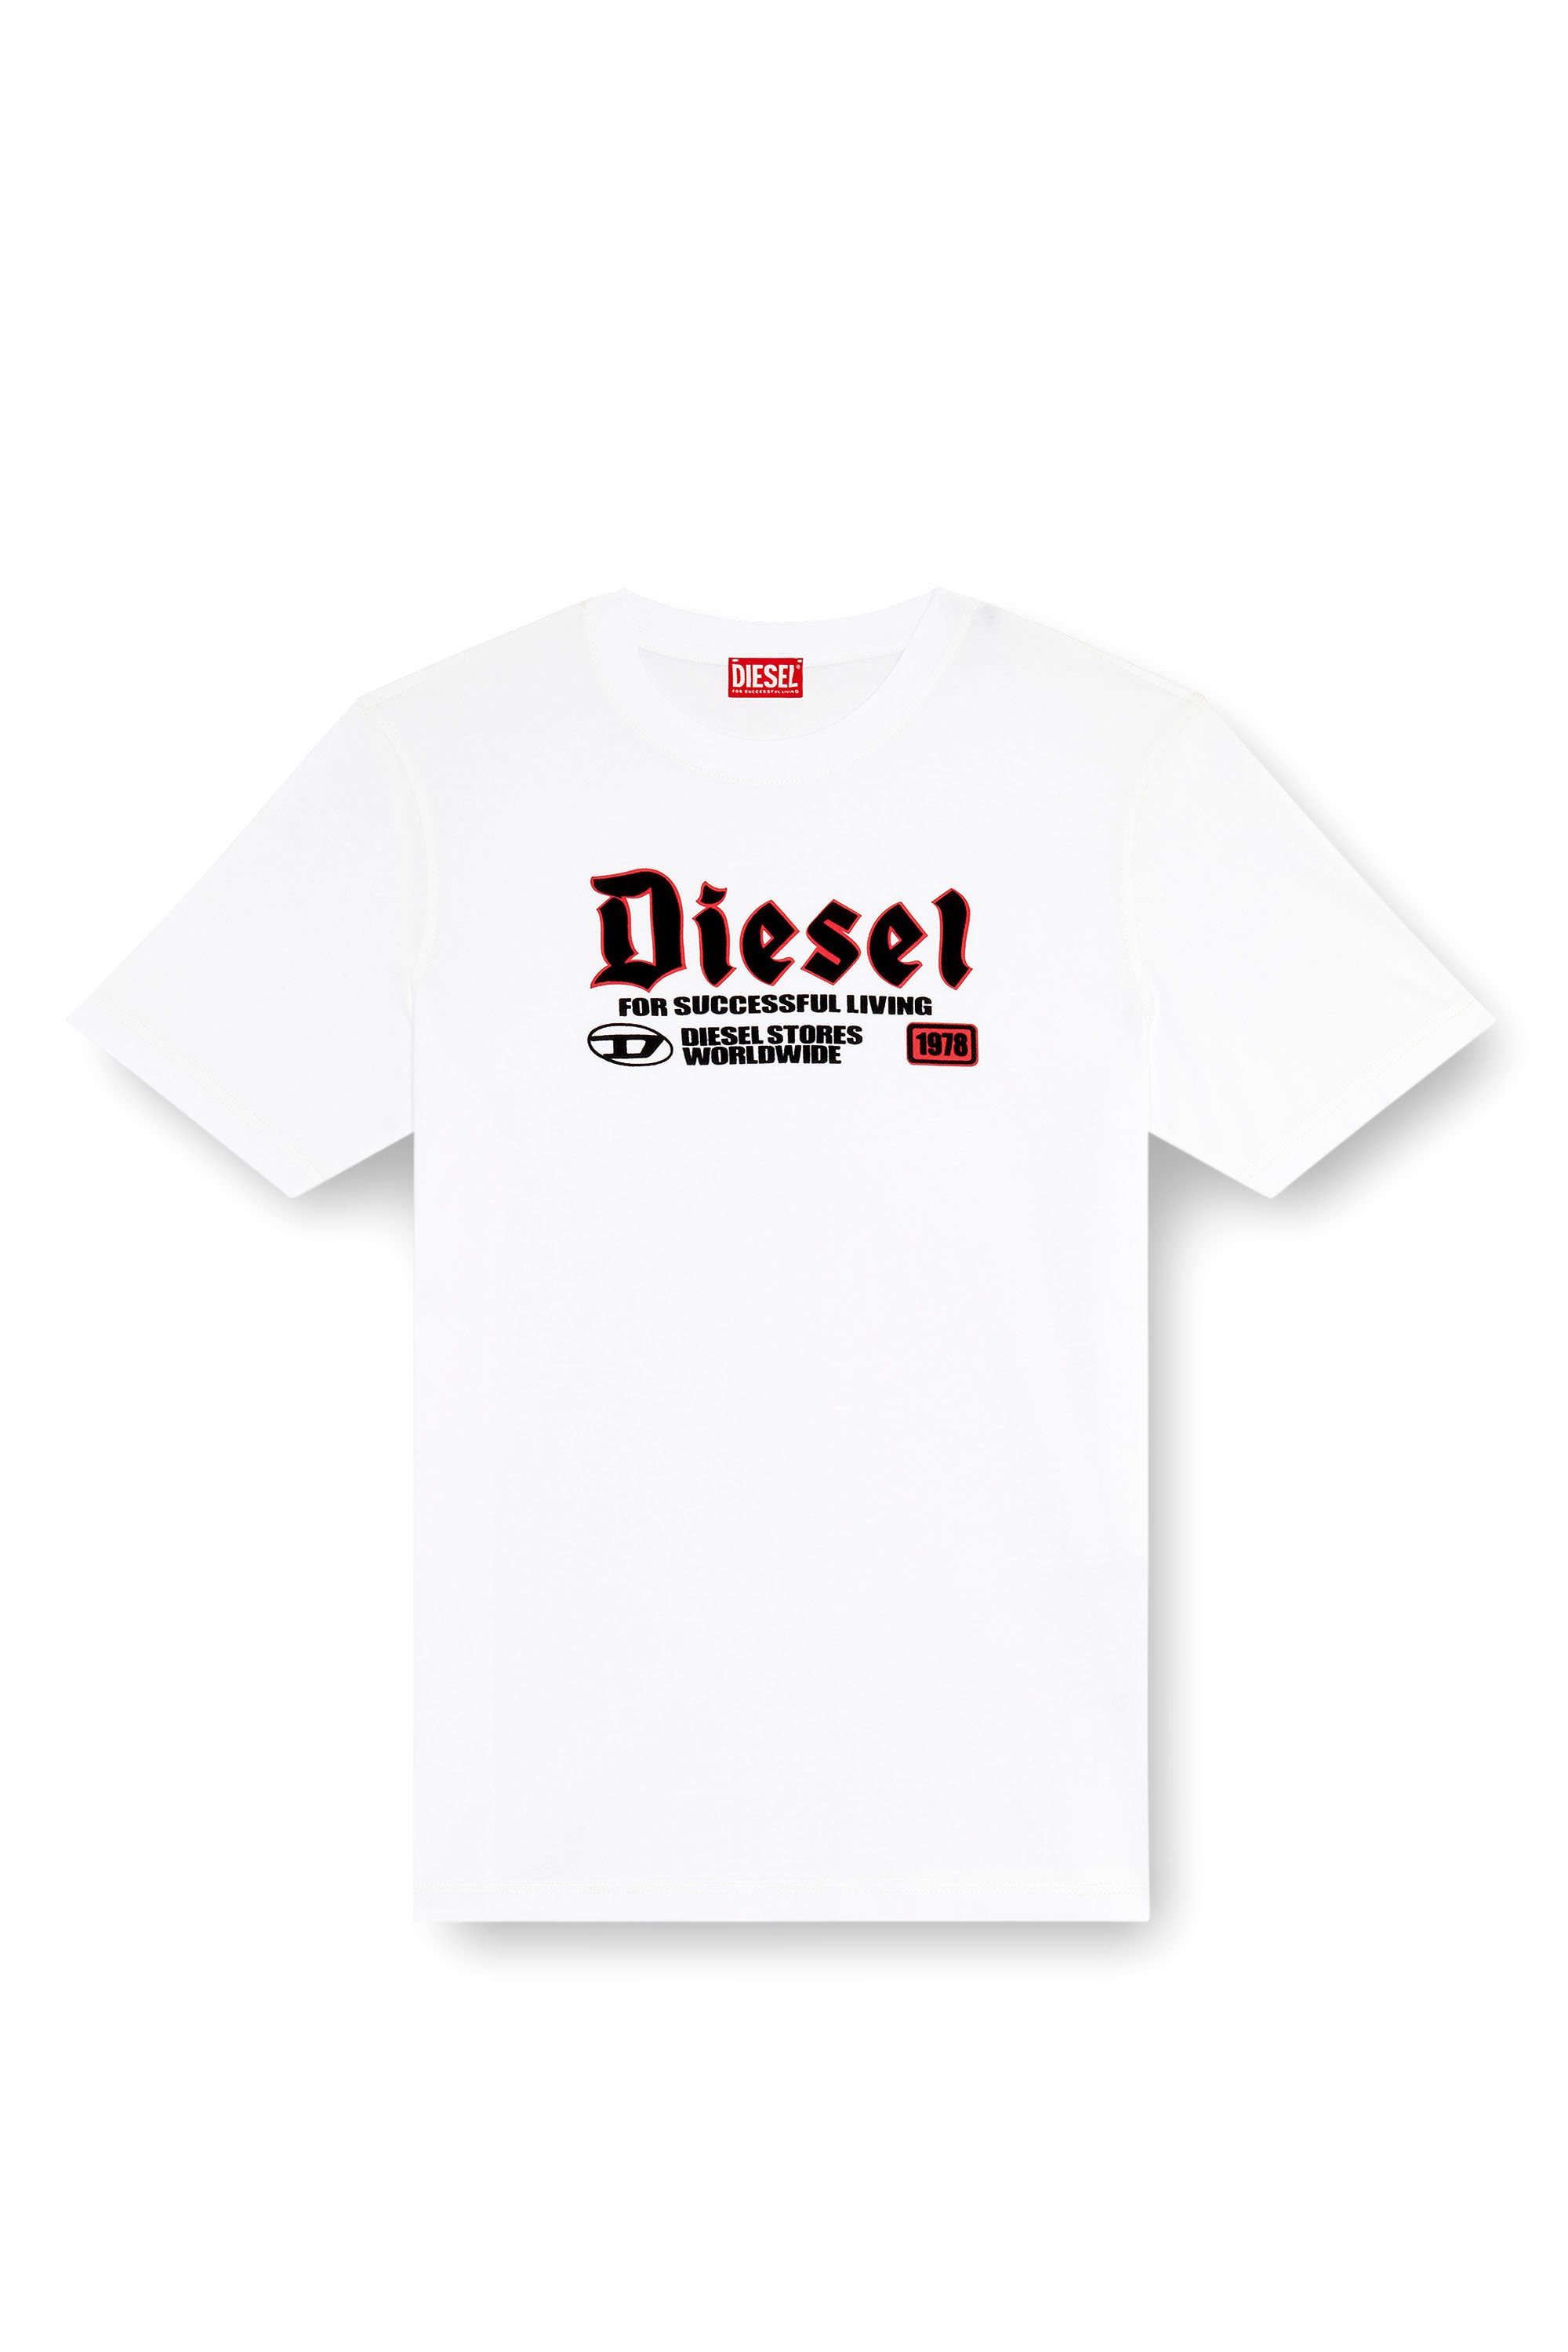 Diesel - T-ADJUST-K1, Homme T-shirt avec imprimé Diesel floqué in Blanc - Image 3